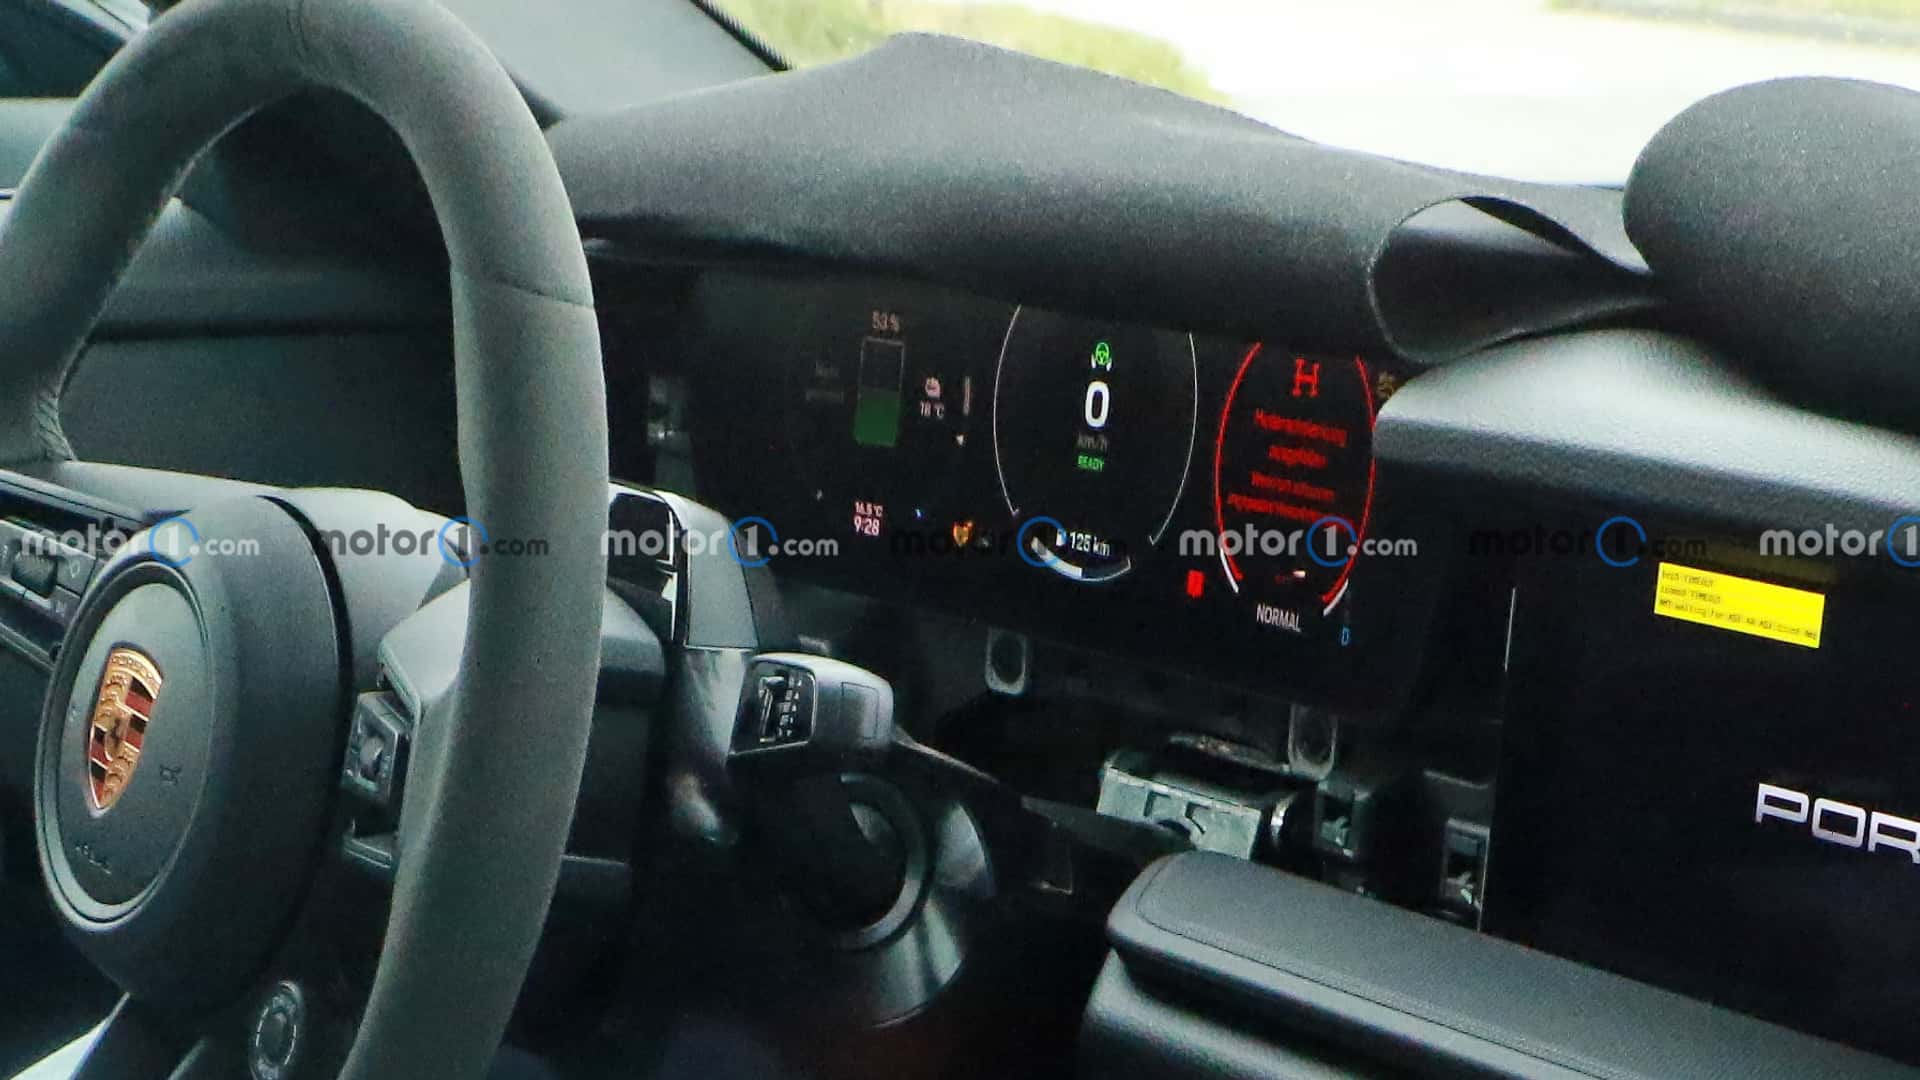 New spy photos show electric Porsche Boxster with dual-screen dashboard design